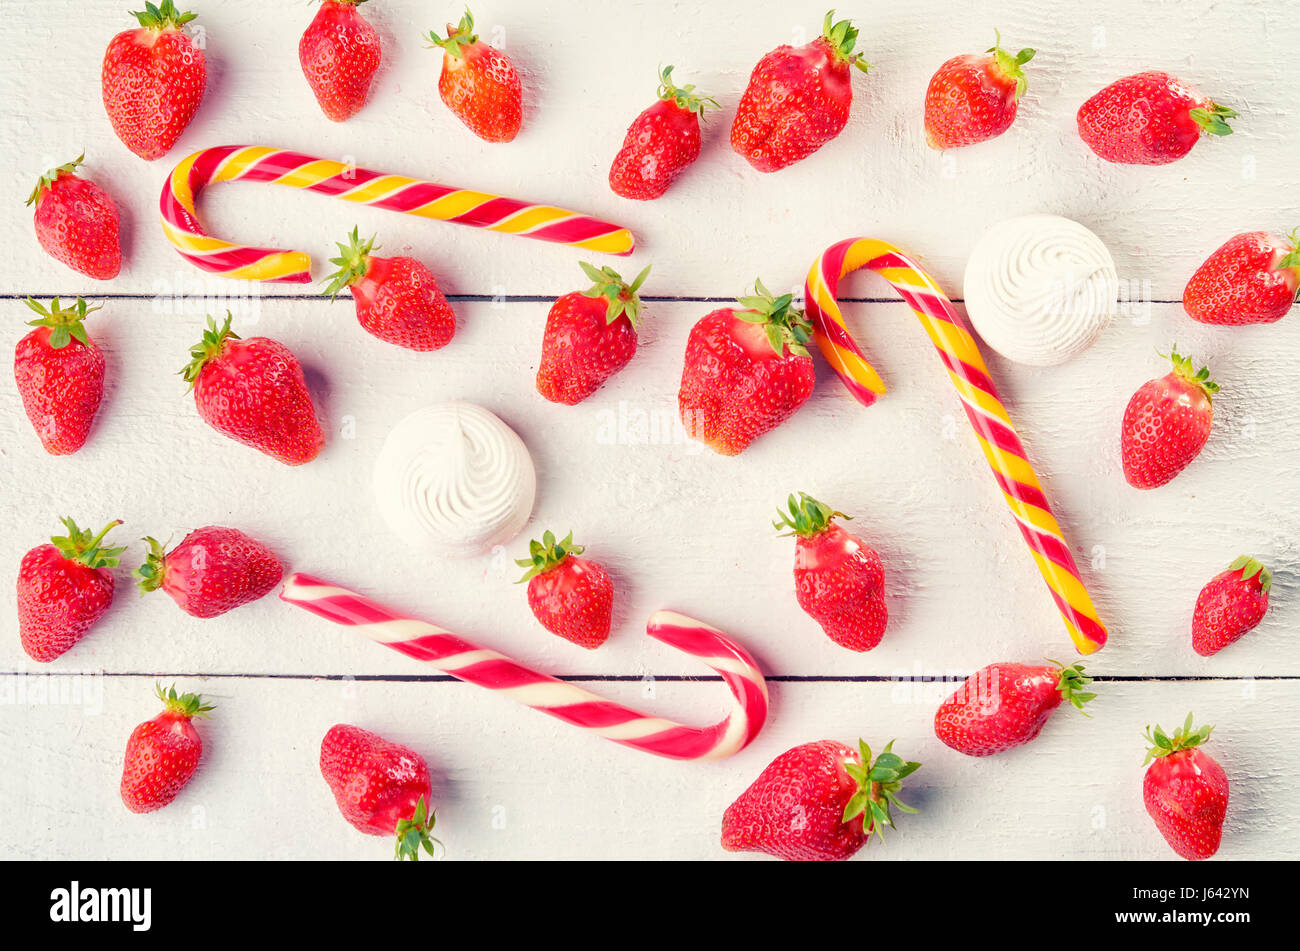 Deliziosi dolci della frutta mix di fragola, caramello e marshmallows su wintage bianco tavola di legno. Foto Stock